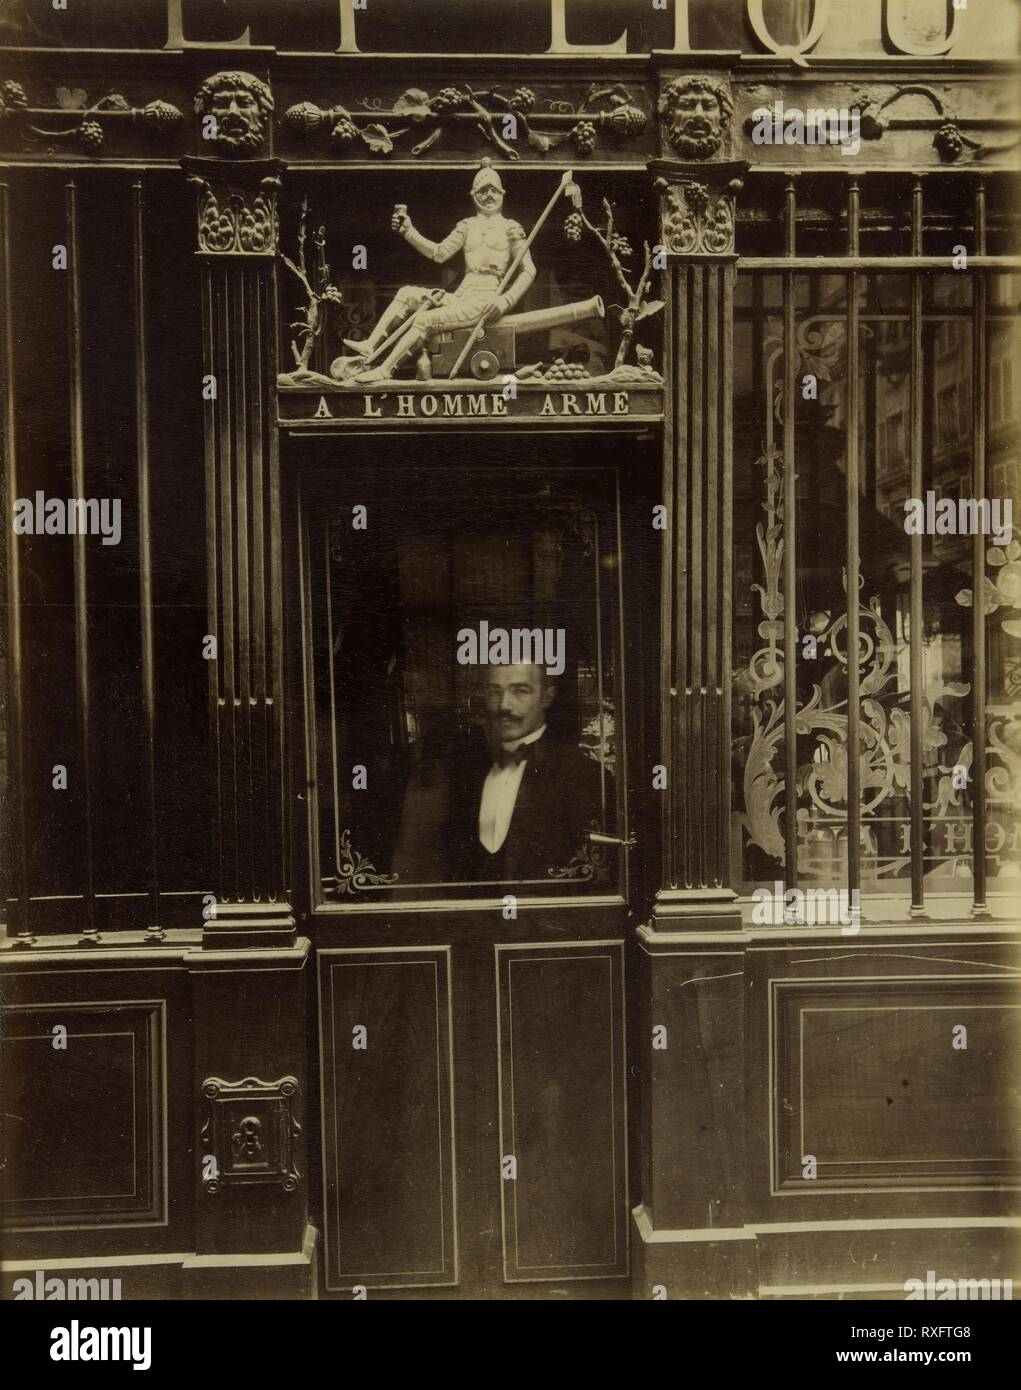 Cabaret de l'Homme Armé, Rue des Blancs-Manteaux. Jean-Eugène-Auguste Atget; French, 1857-1927. Date: 1900. Dimensions: 22.1 × 17.4 cm (image/paper). Albumen print. Origin: France. Museum: The Chicago Art Institute. Stock Photo